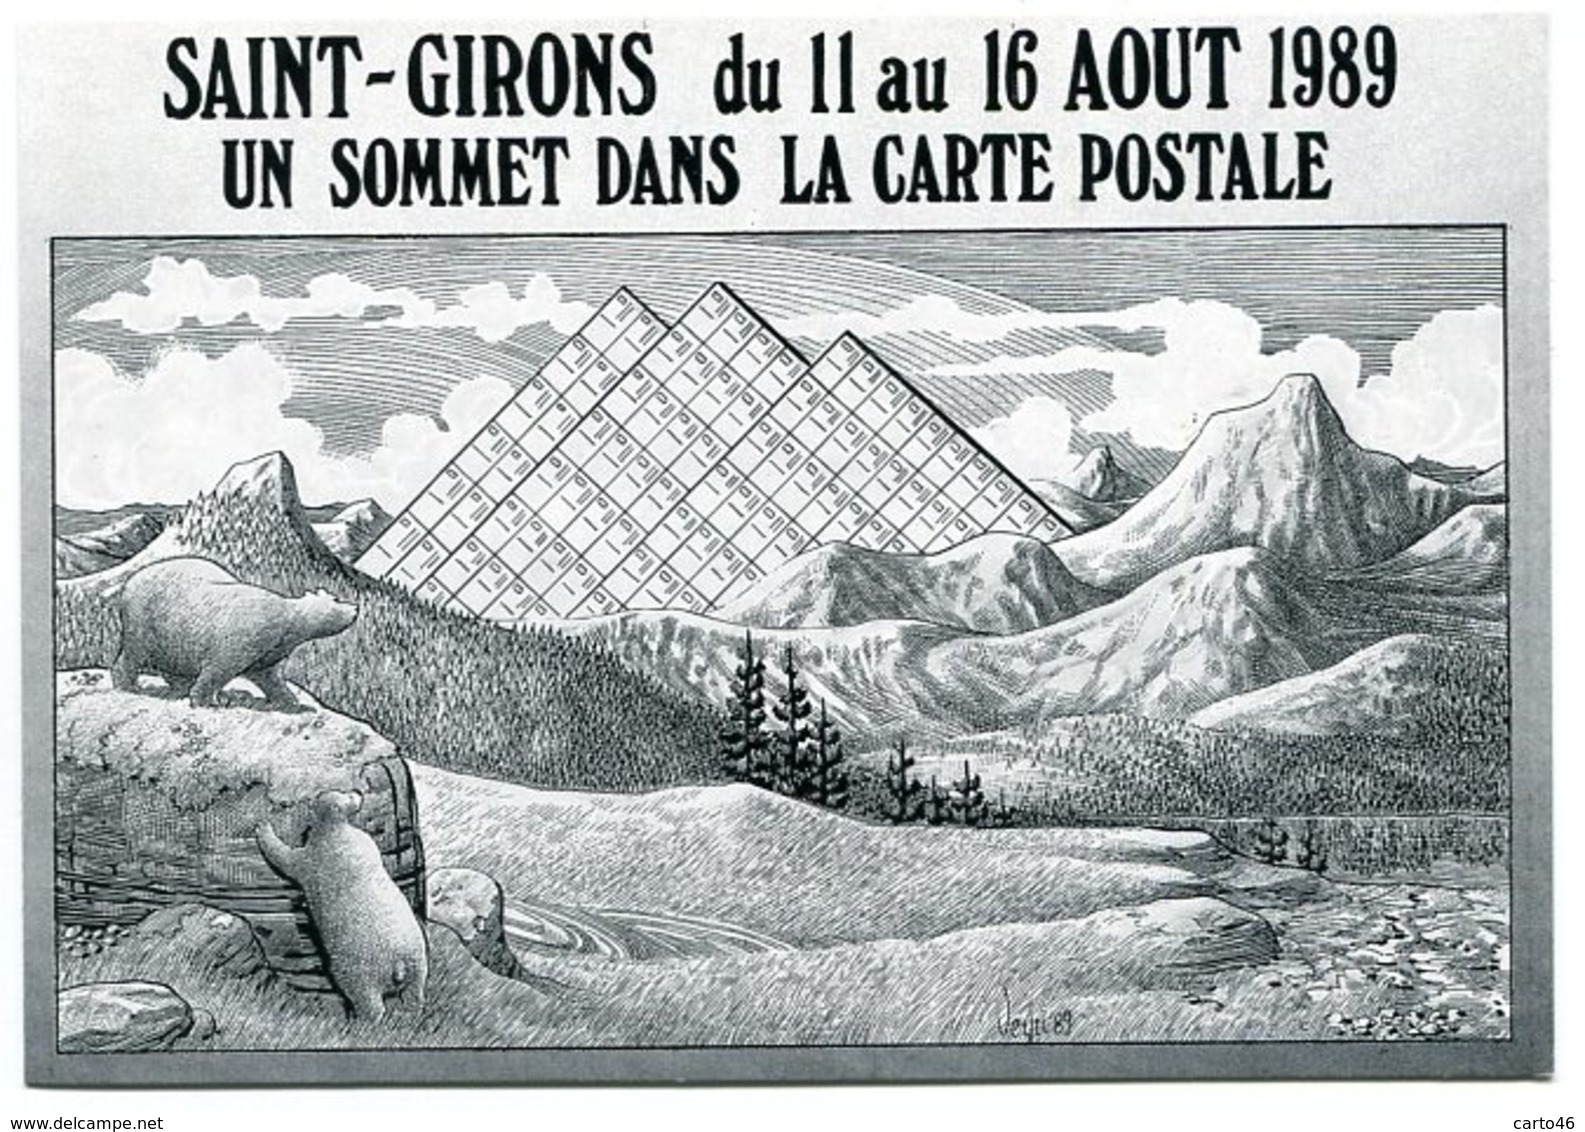 VEYRI - Saint-GIRONS - Les 6 Jours De La Carte Postale - 1989 - Ours - Pyrénées - Voir Scan - Veyri, Bernard